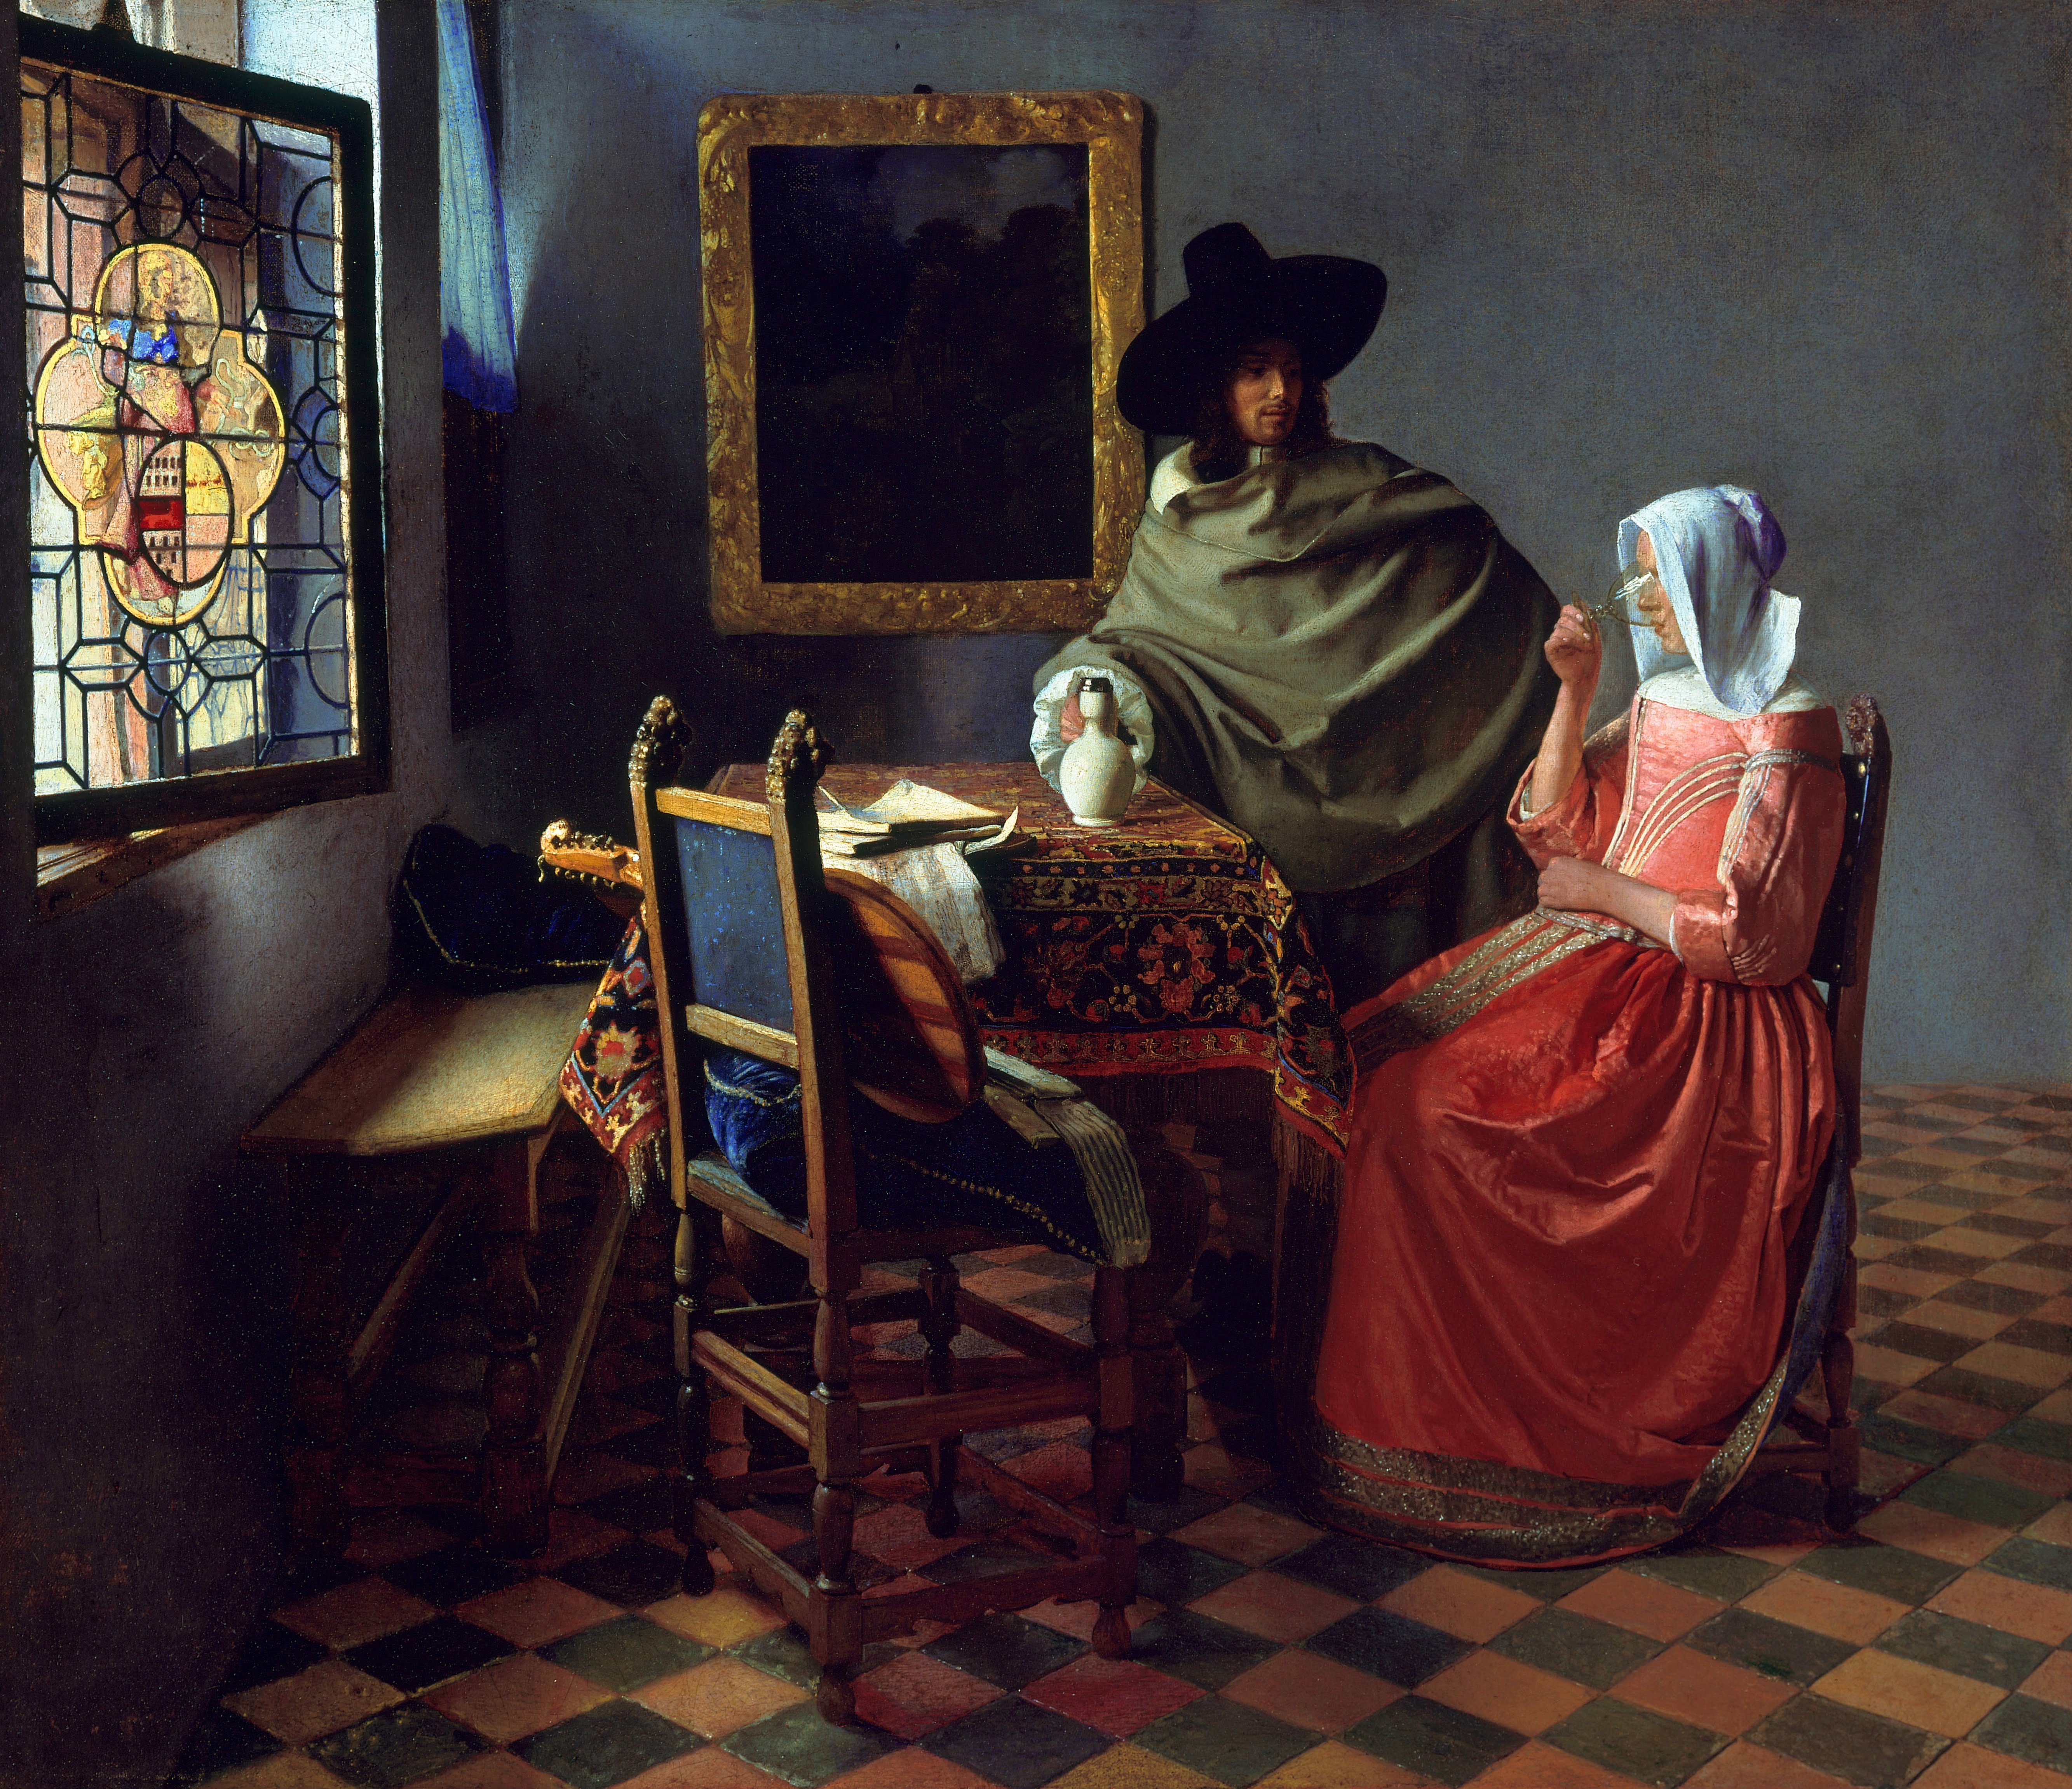 Vermeer's women with wine